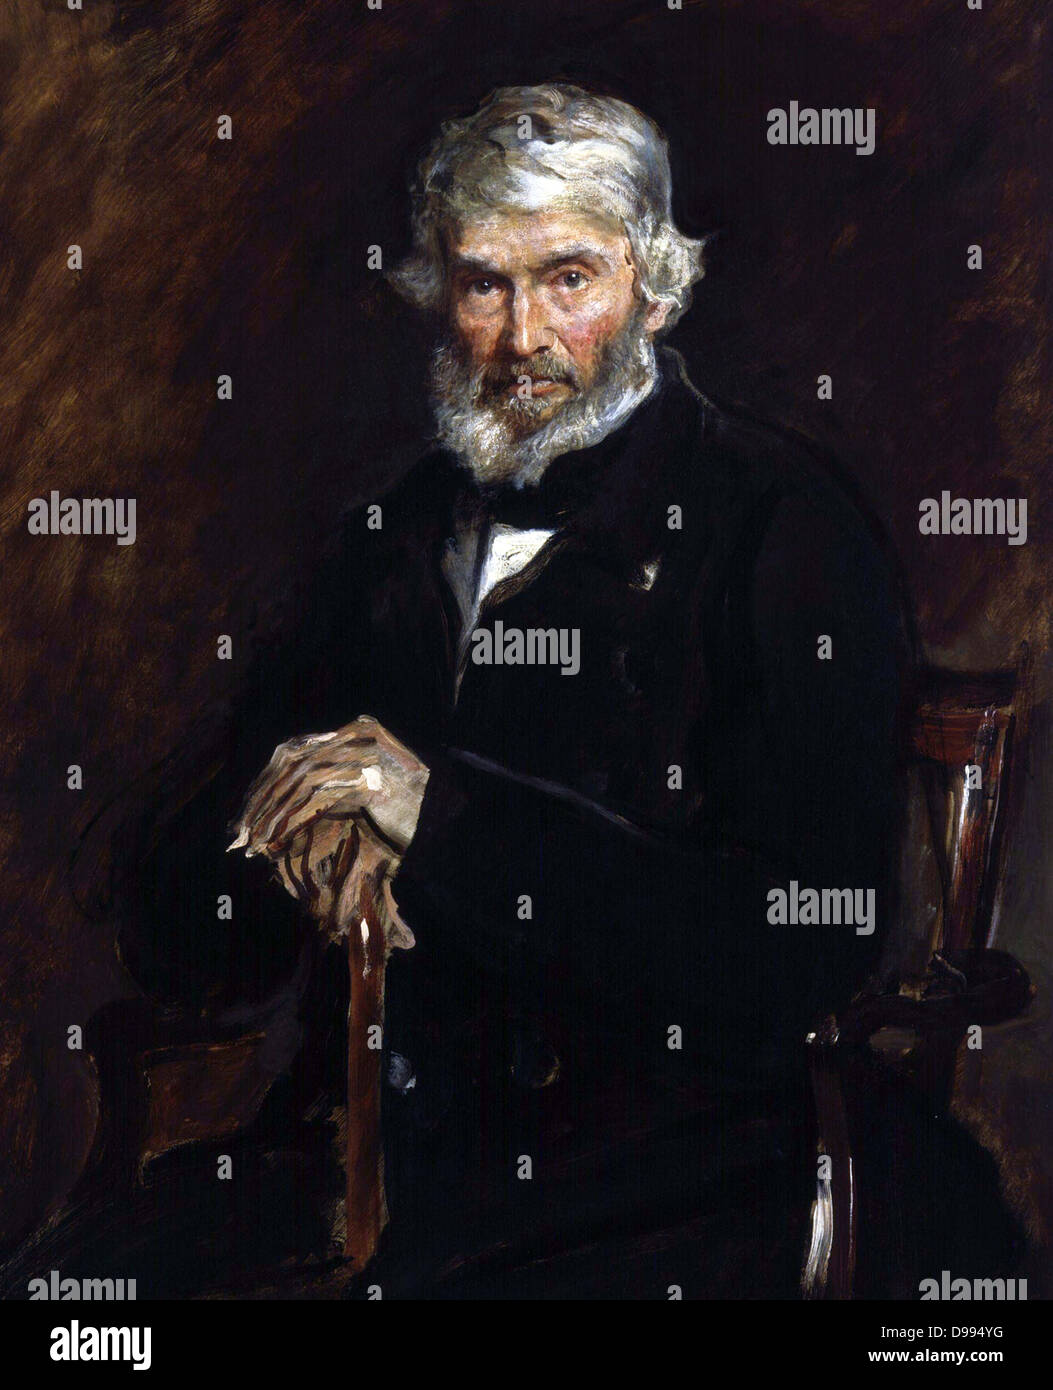 Thomas Carlyle 1877 par John Everett Millais (1829-1896) peintre anglais. Thomas Carlyle (1795-1881), écrivain satirique écossais, essayiste et historien. Trois-quarts de portrait sujet assis, à l'avant. Banque D'Images